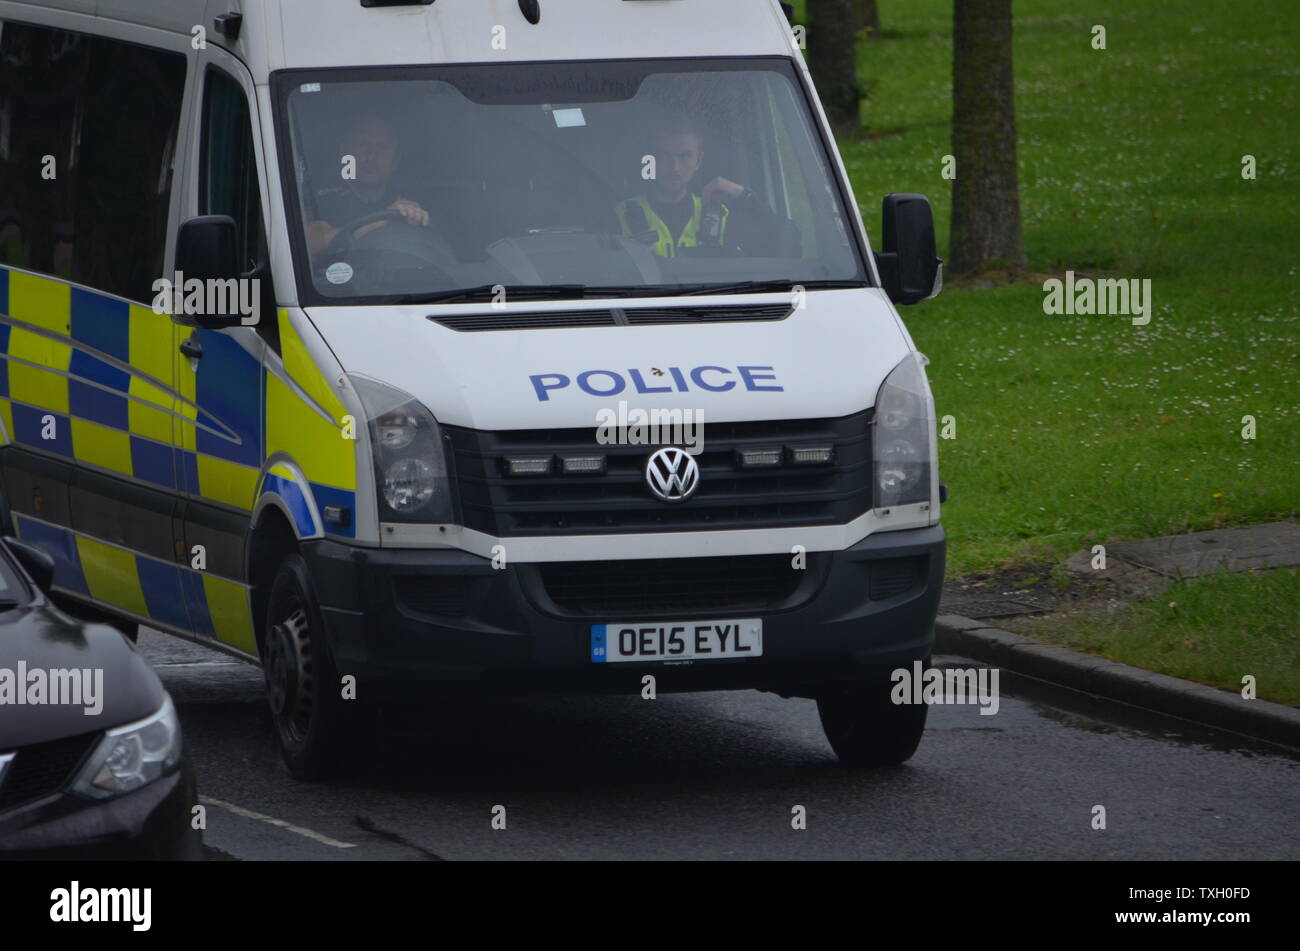 Polizei van Mobile für Incident Stockfoto